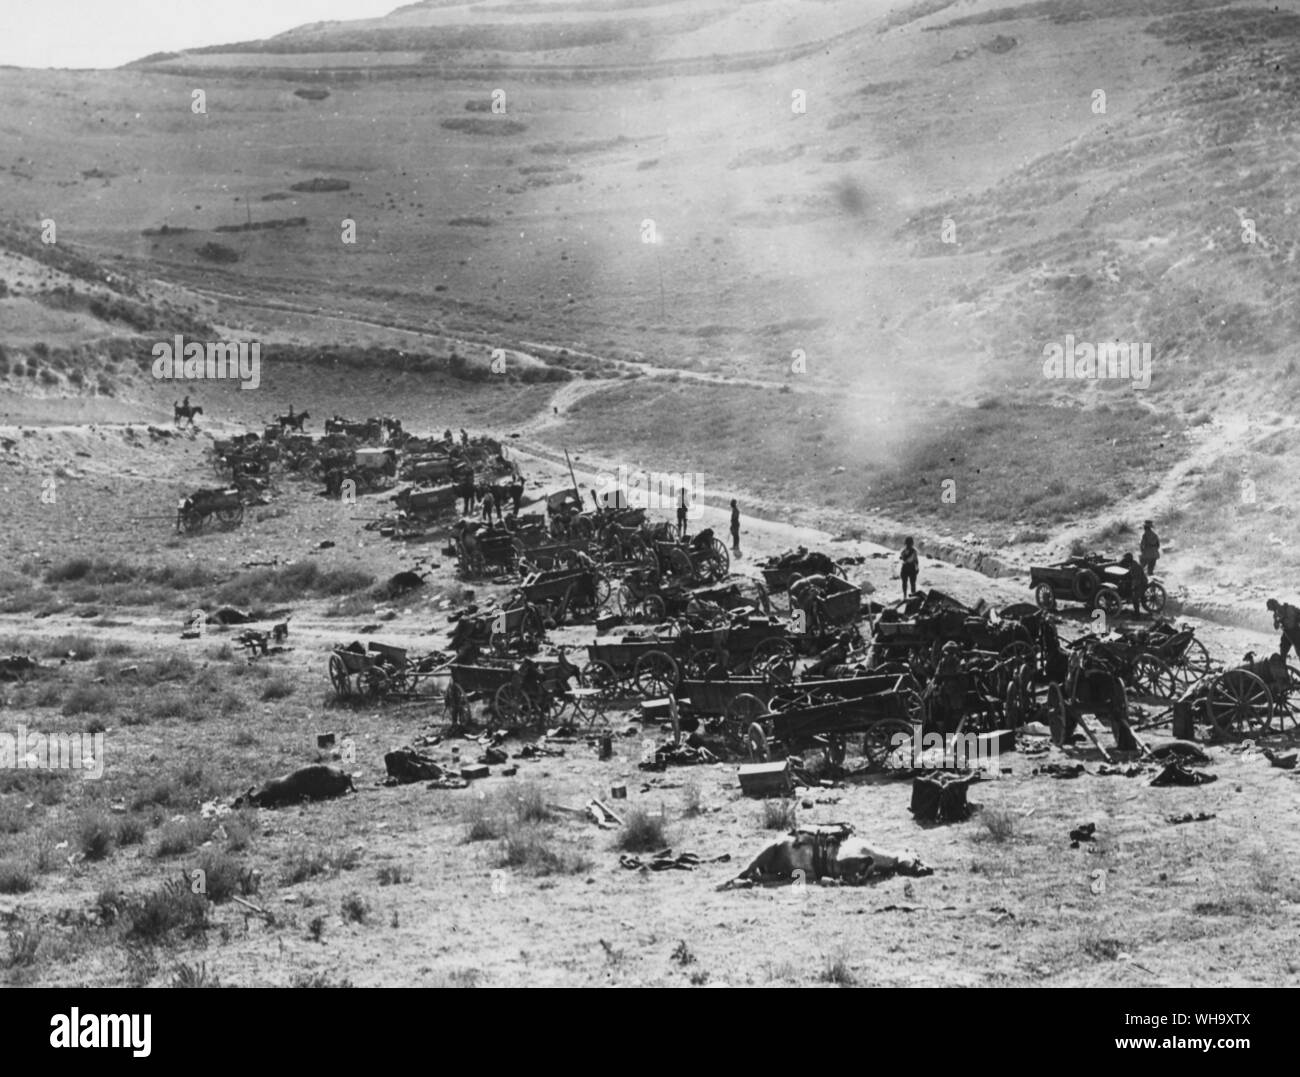 WW1: Türkisch Transport durch britische Flugzeuge, die auf dem Nablus-Beisan Straße zerstört, 20. September 1918. Stockfoto